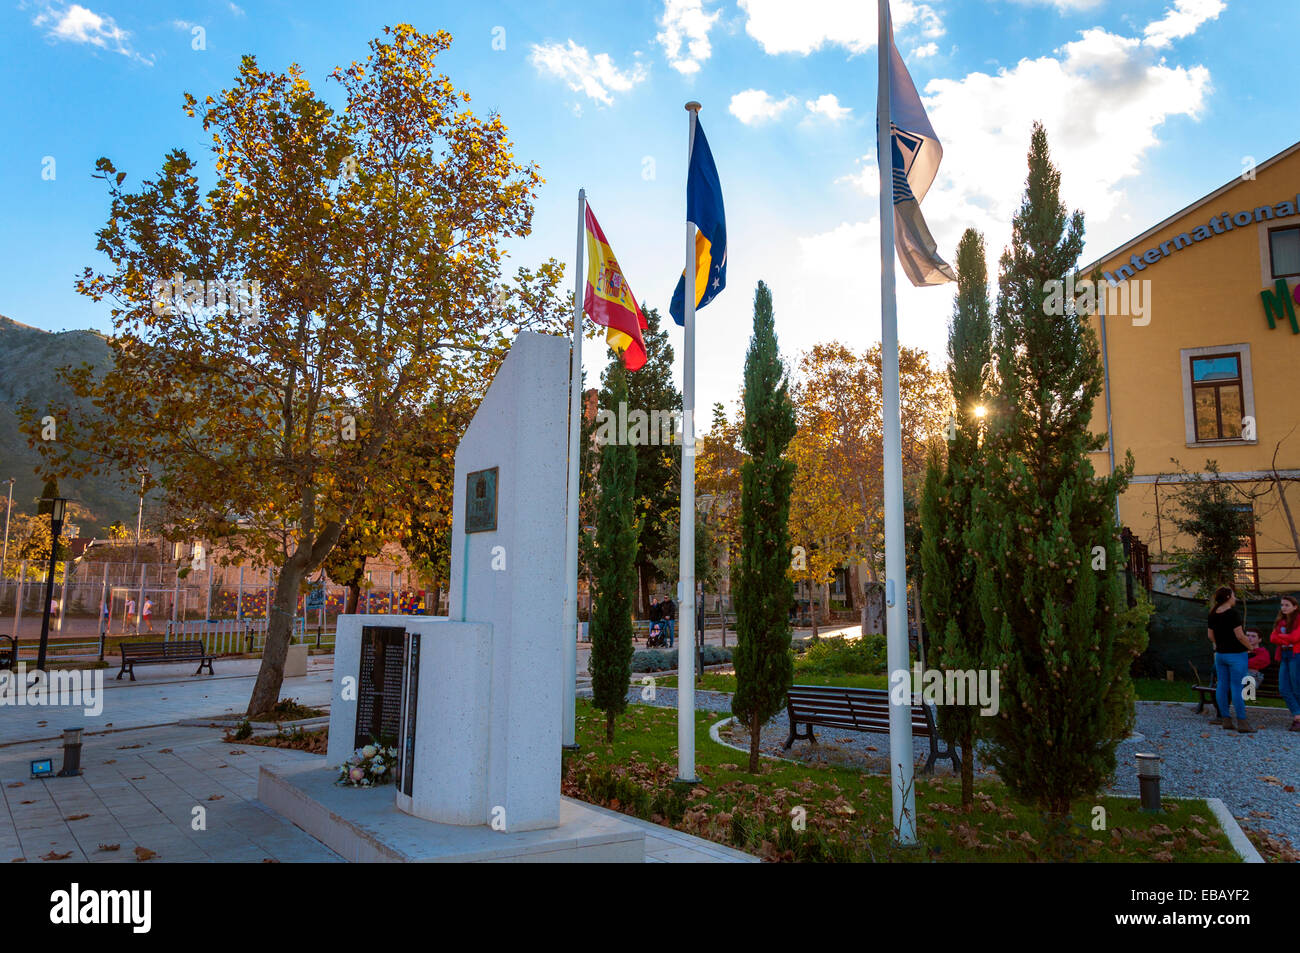 En Espagnol Memorial Square Mostar Bosnie et Herzégovine de l'ONU casques bleus espagnols vingt morts dans la ville au cours de la c Banque D'Images